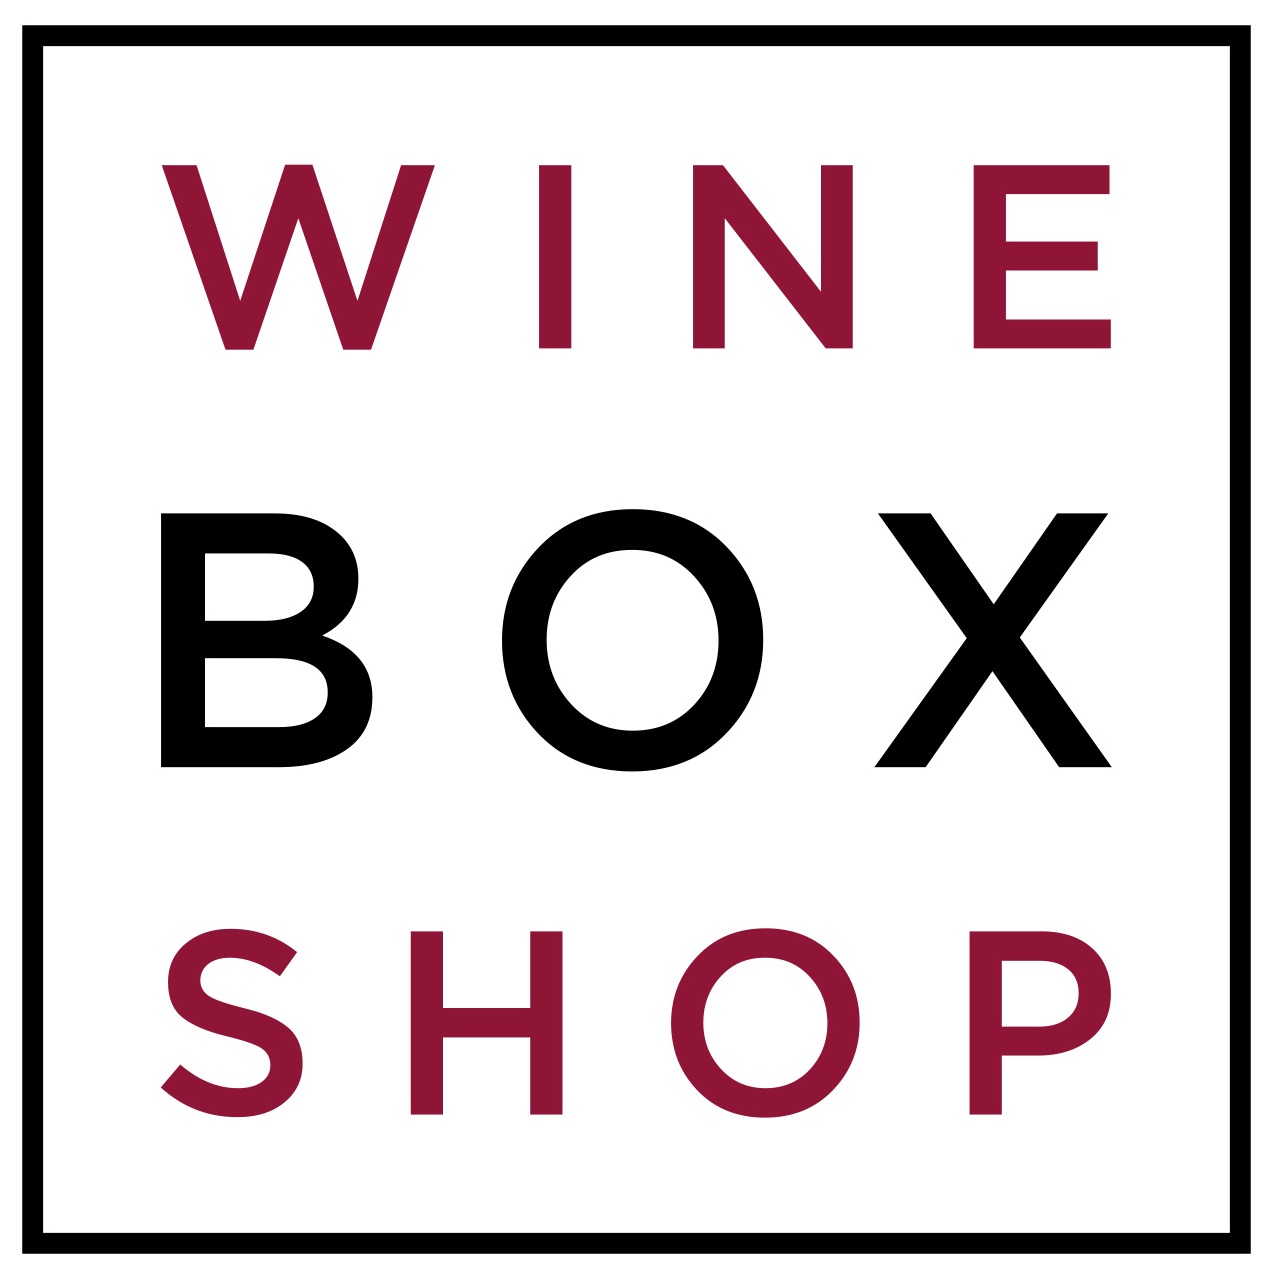 Wine Bottle Packaging | Wine Box Shop